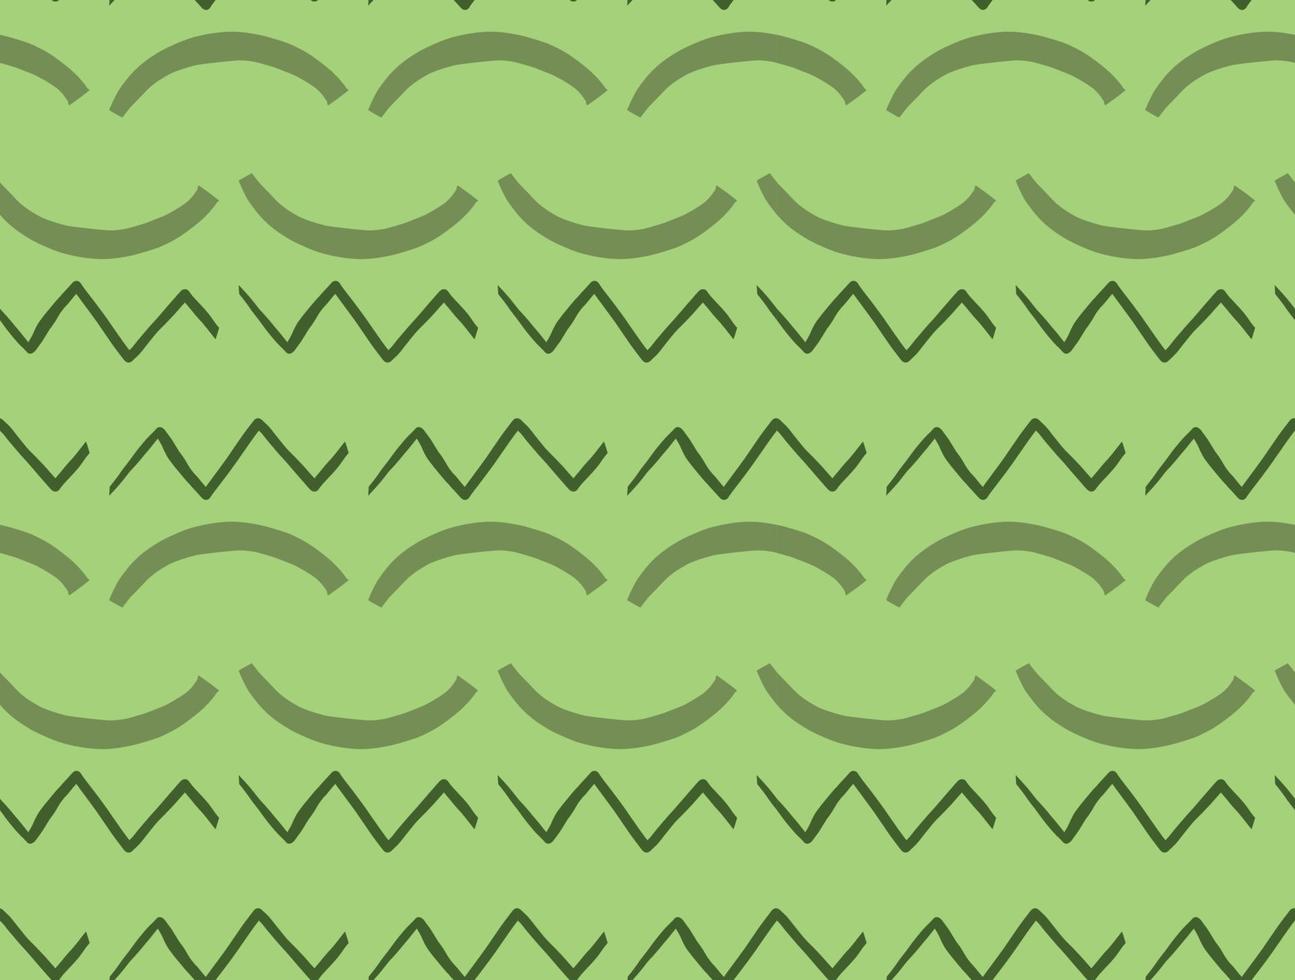 Vector texture di sfondo, seamless pattern. disegnati a mano, colori verdi.